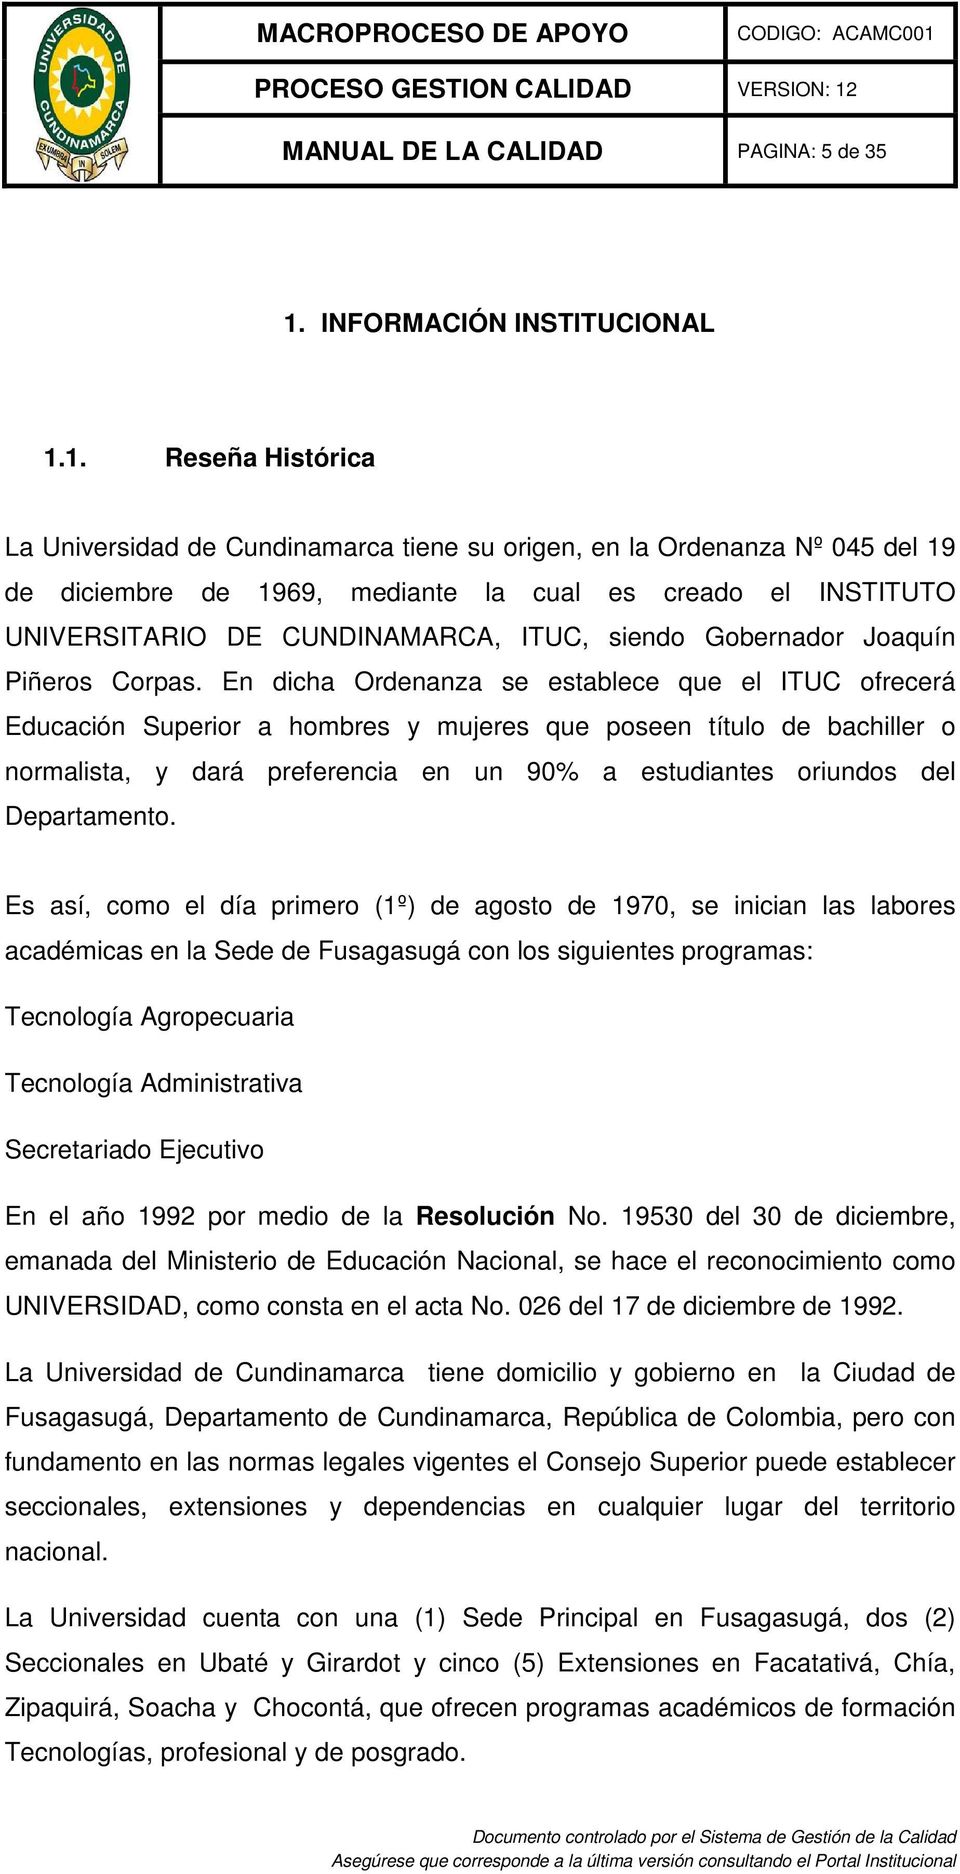 1. Reseña Histórica La Universidad de Cundinamarca tiene su origen, en la Ordenanza Nº 045 del 19 de diciembre de 1969, mediante la cual es creado el INSTITUTO UNIVERSITARIO DE CUNDINAMARCA, ITUC,